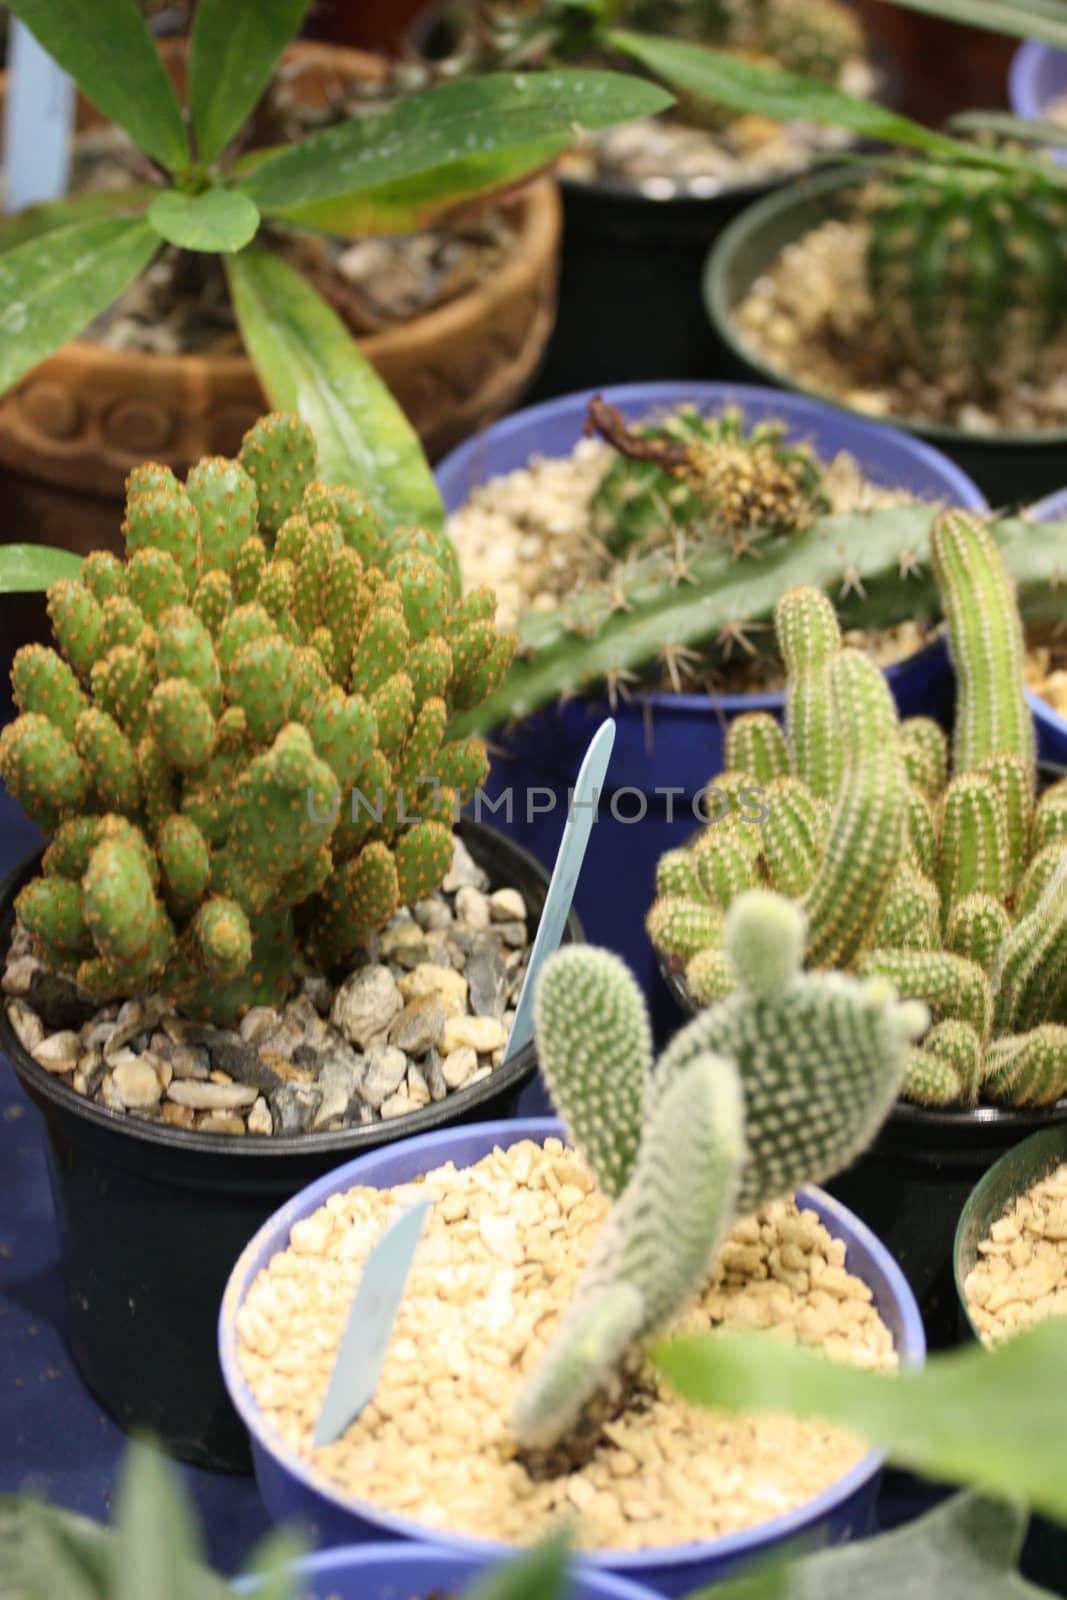 Cactuses close up showing unique pattern.